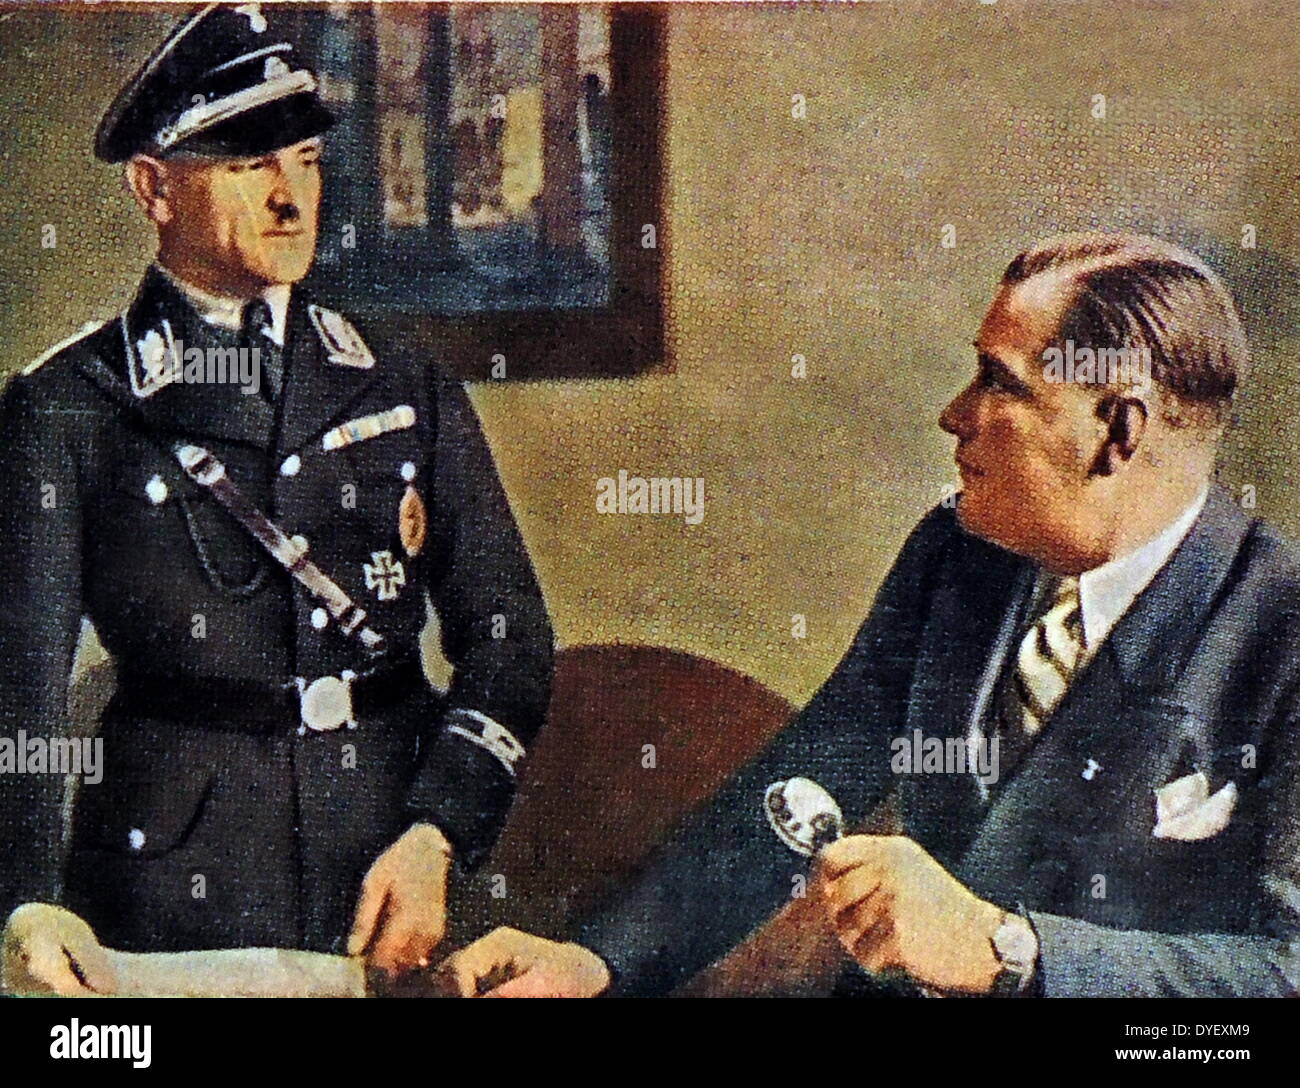 Wilhelm Brückner (assis à droite) 1884 - 1954 a été jusqu'en 1940 d'Adolf Hitler de l'adjudant-chef. Il n'est Josef 'Sepp' Dietrich 1892 - 1966) Général Waffen-SS allemand et membre du parti nazi de l'Allemagne nazie. Avant 1929, il était chauffeur d'Adolf Hitler et garde du corps mais n'a reçu de promotion rapide après sa participation au meurtre d'opposants politiques d'Hitler durant la nuit des longs couteaux. Banque D'Images